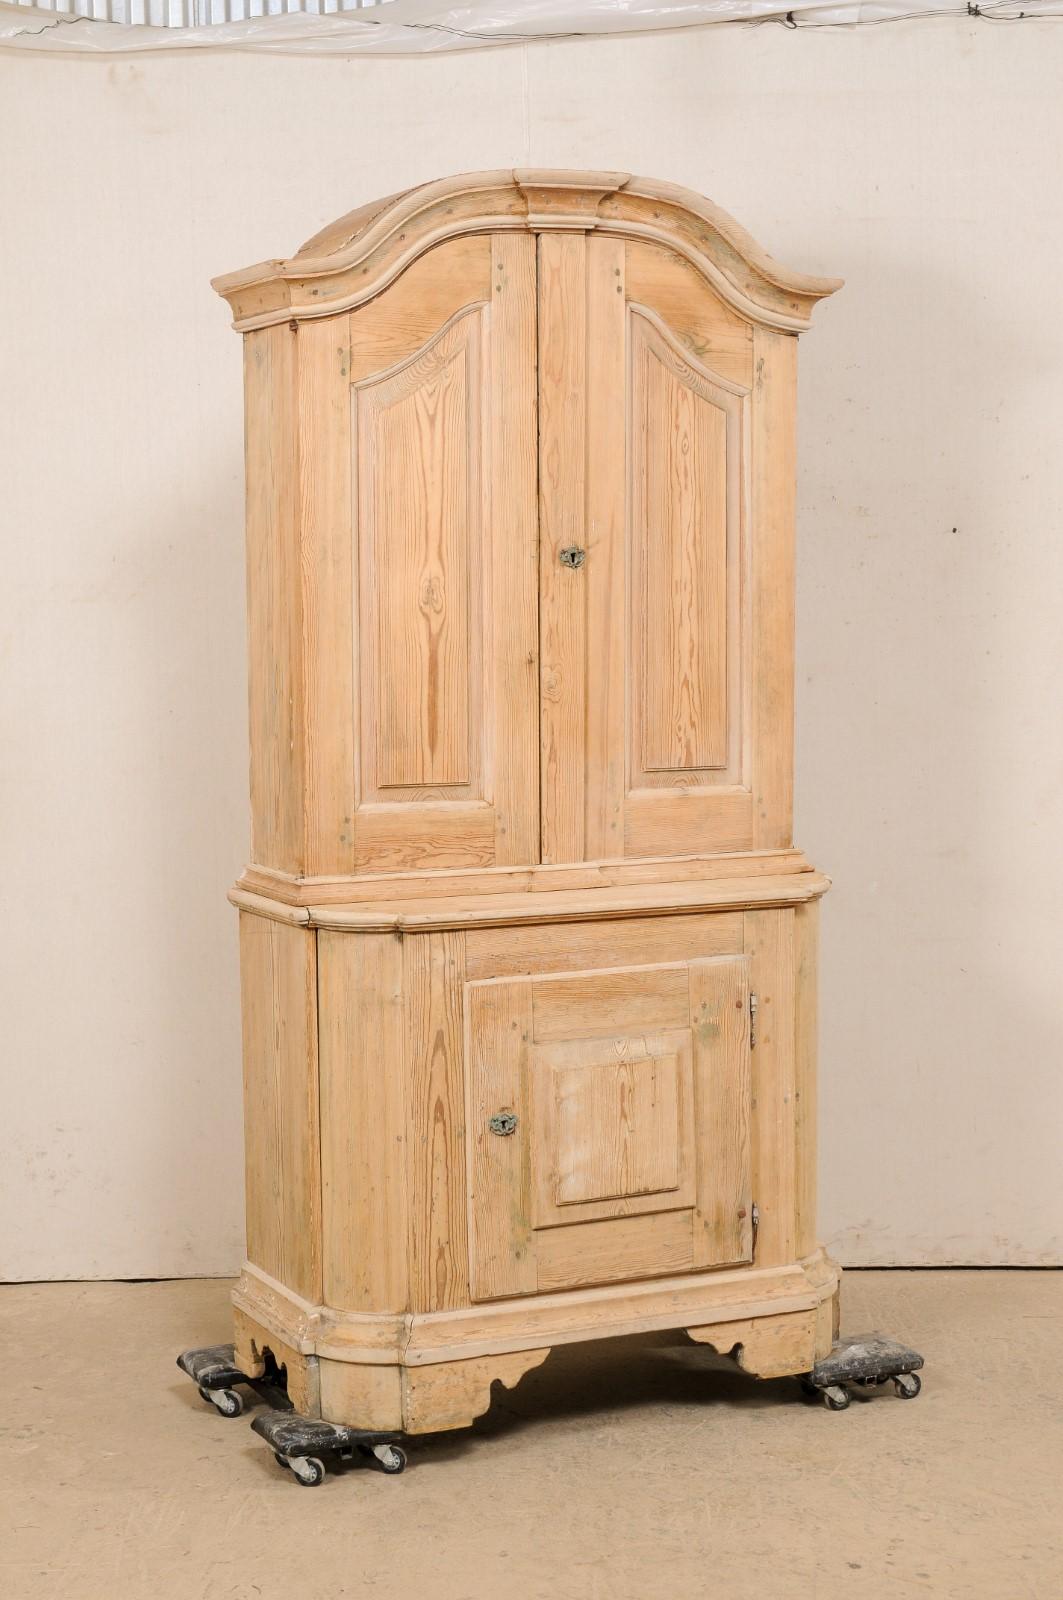 Un grand meuble de rangement en bois peint de la période rococo suédoise du 18ème siècle. Ce meuble de rangement ancien de Suède est couronné d'une corniche de fronton gracieusement arquée au sommet, de portes à panneaux en relief magnifiquement